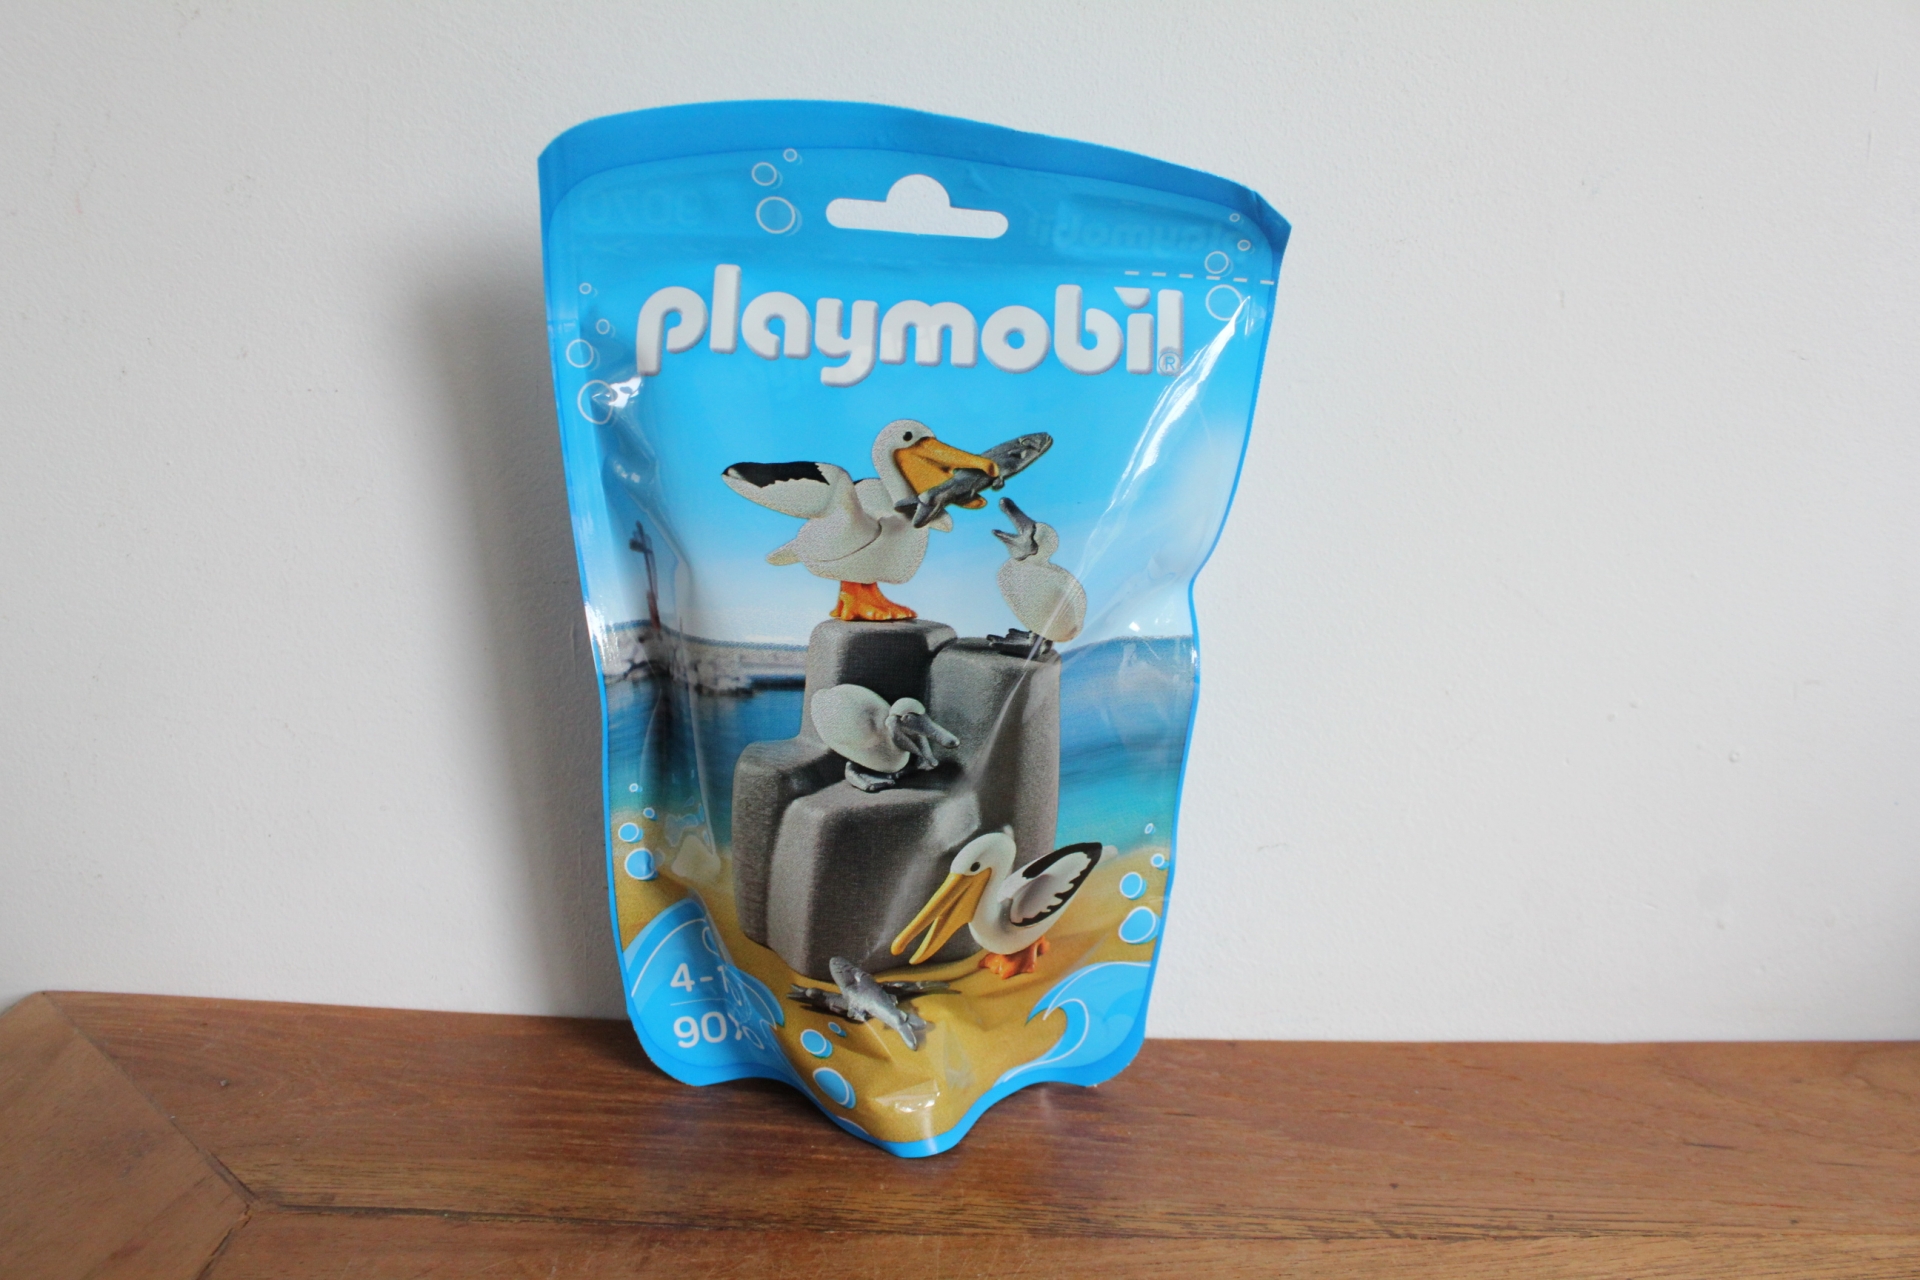 kubus cassette magneet Playmobil pelikanen 9070 nieuw - Zee en water dieren - 2e hands playmo